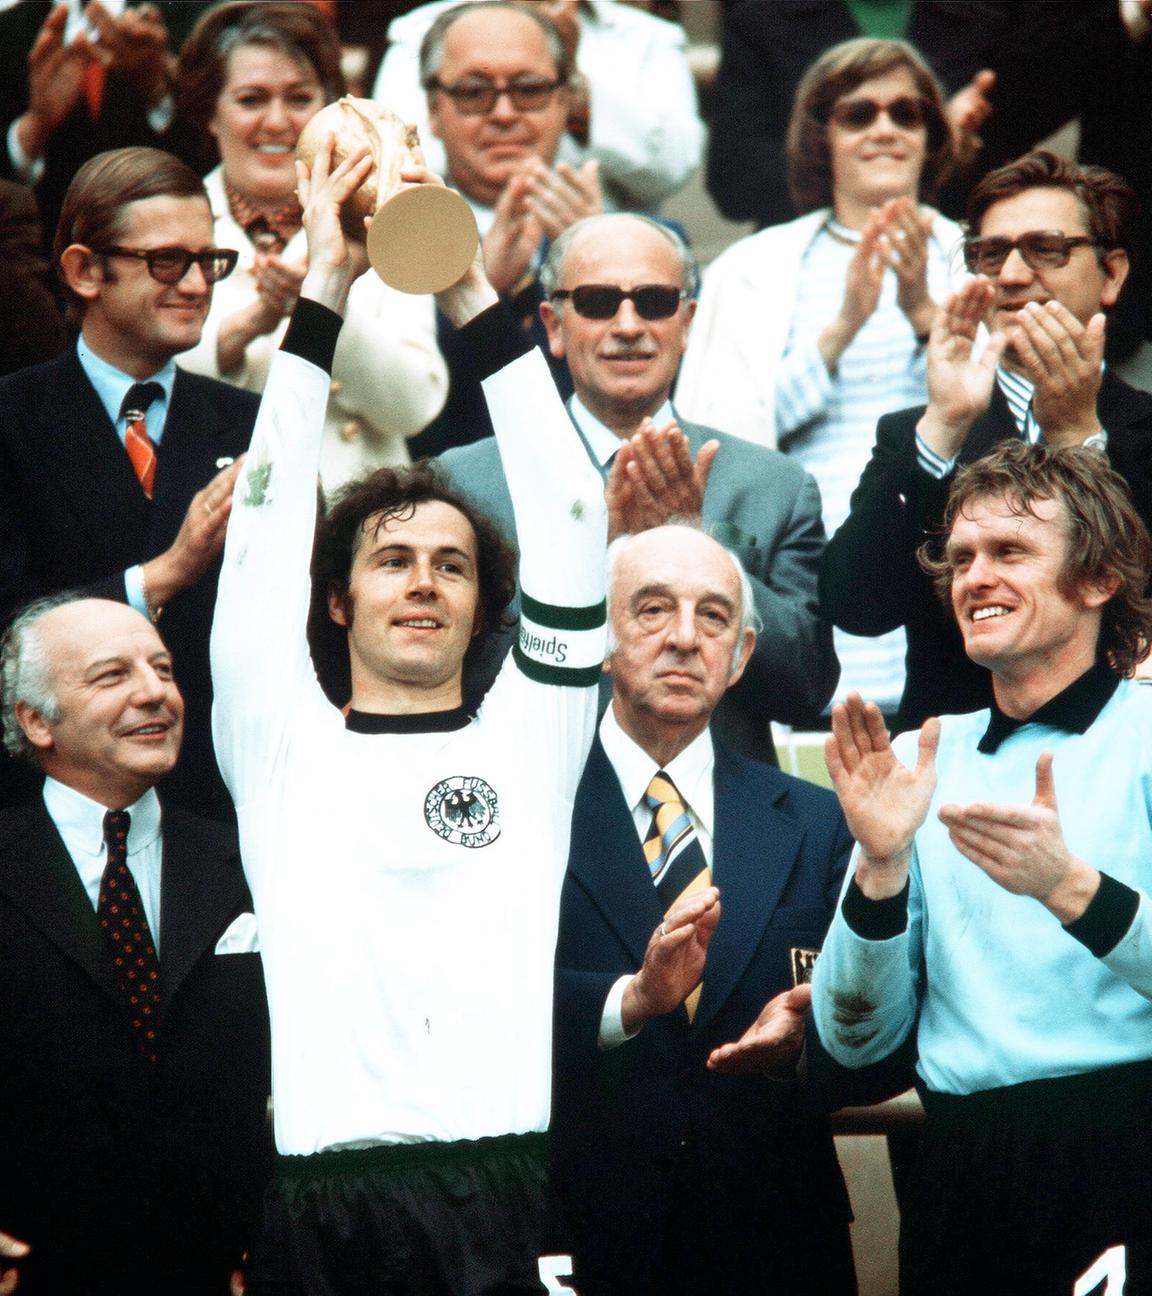 Weltmeisterschaft 1974: Franz Beckenbauer mit Pokal